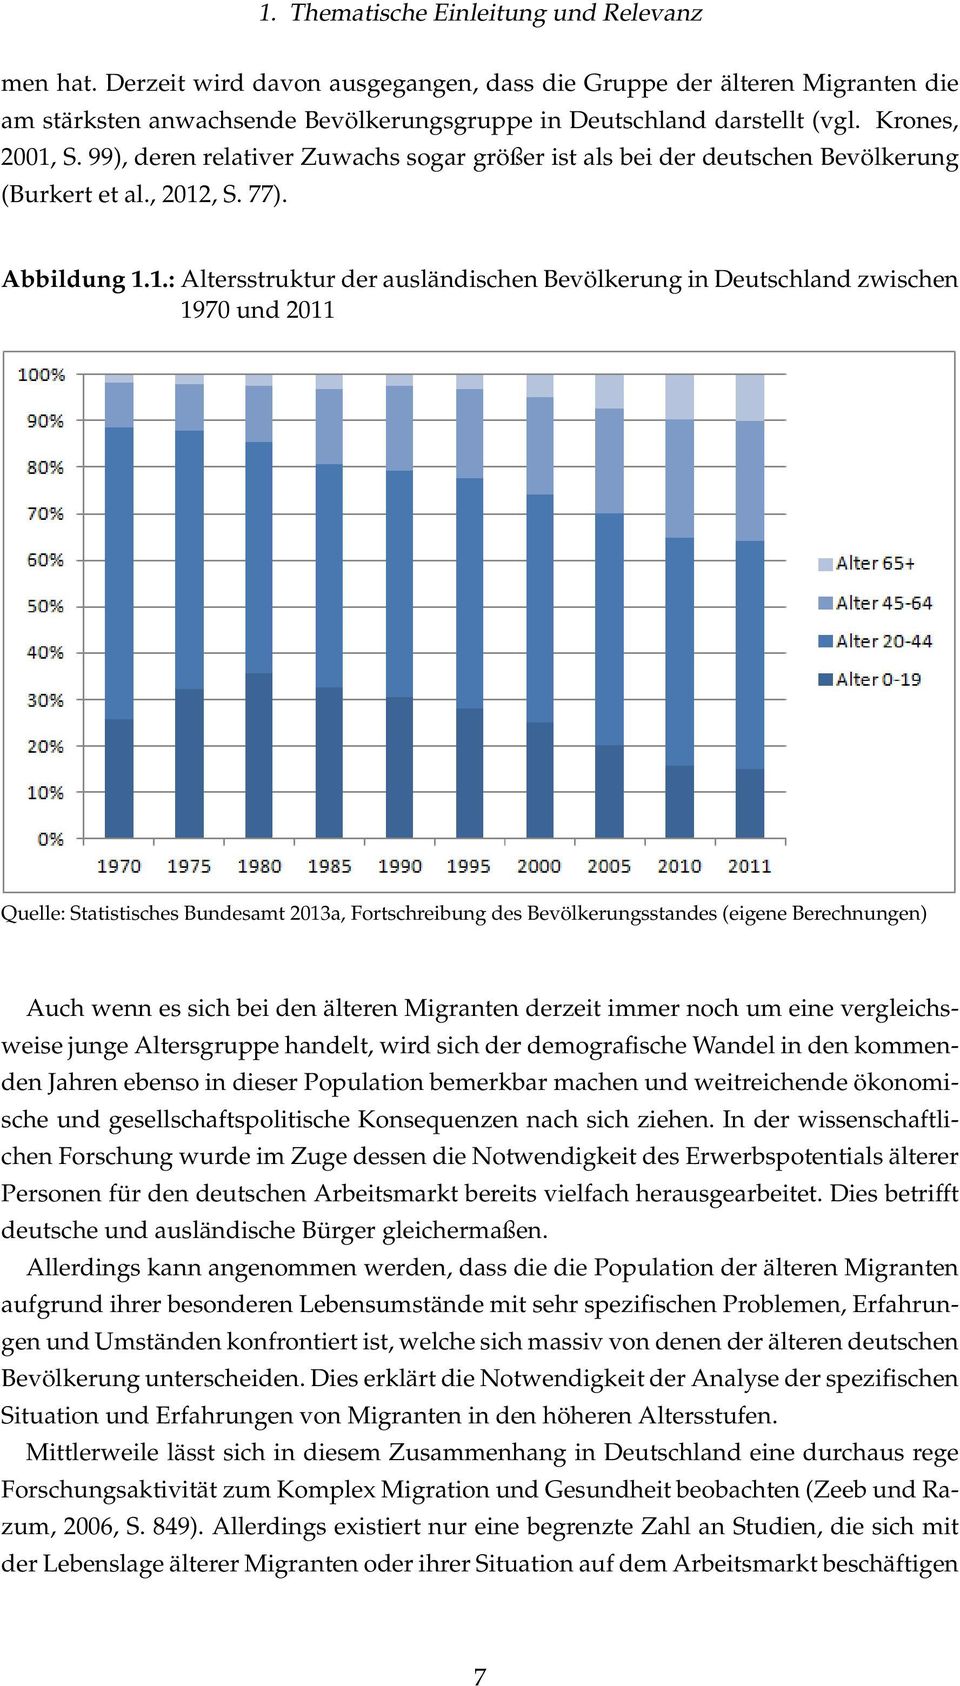 S. 99), deren relativer Zuwachs sogar größer ist als bei der deutschen Bevölkerung (Burkert et al., 2012